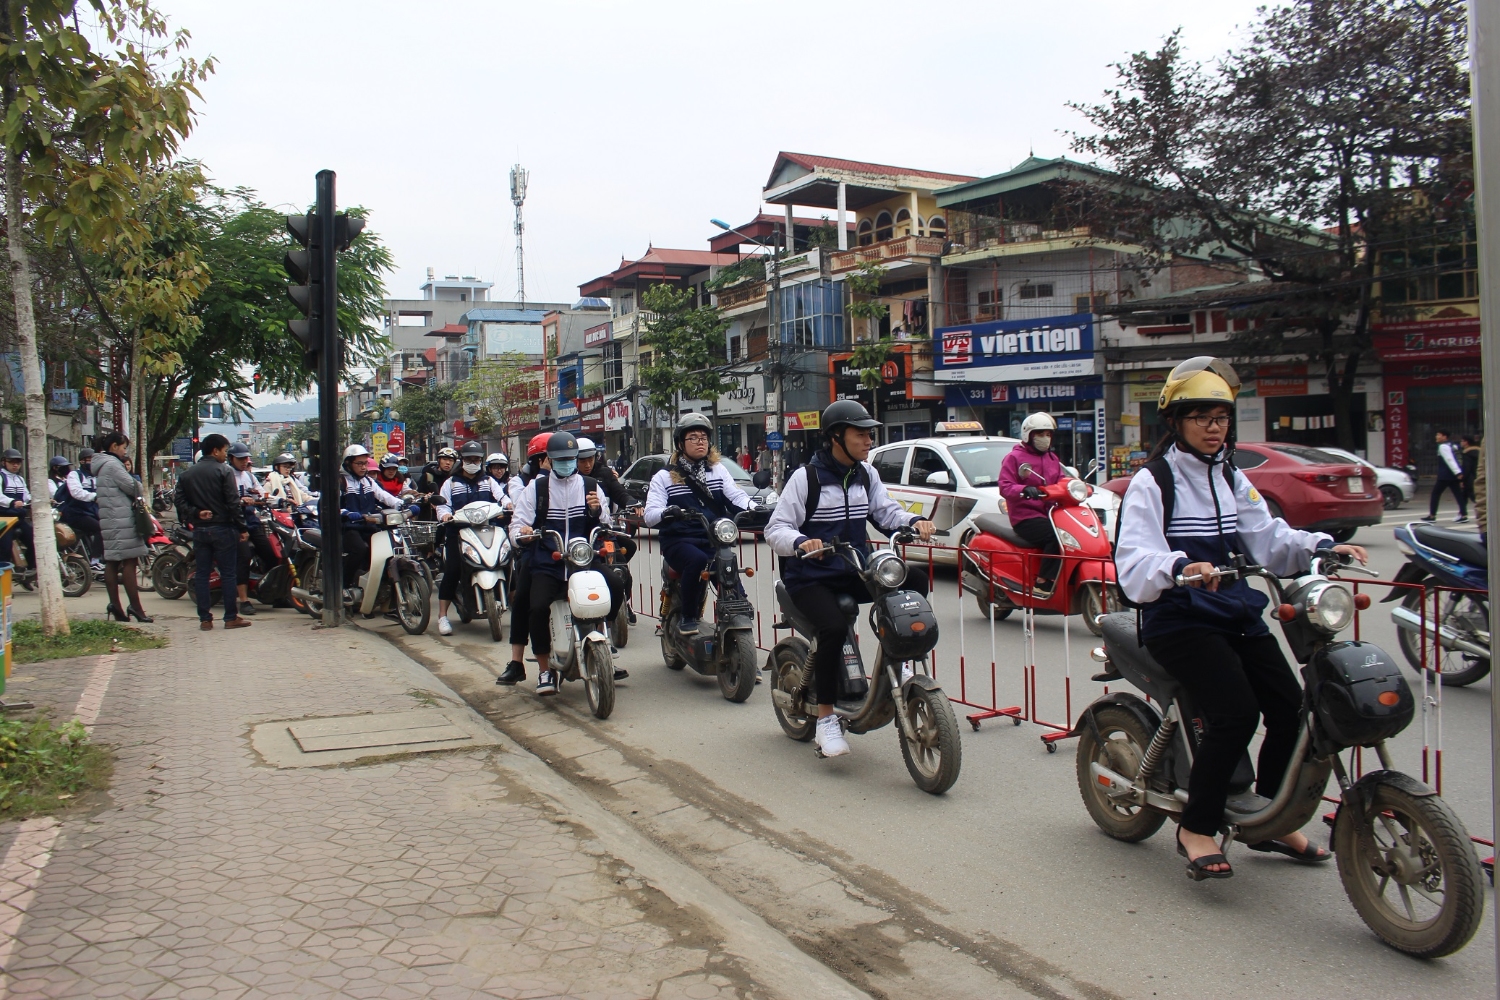 Hiệu quả mô hình "cổng trường an toàn giao thông" tại trường THPT số 1 Lào  Cai | Đài Phát thanh - Truyền hình Lào Cai